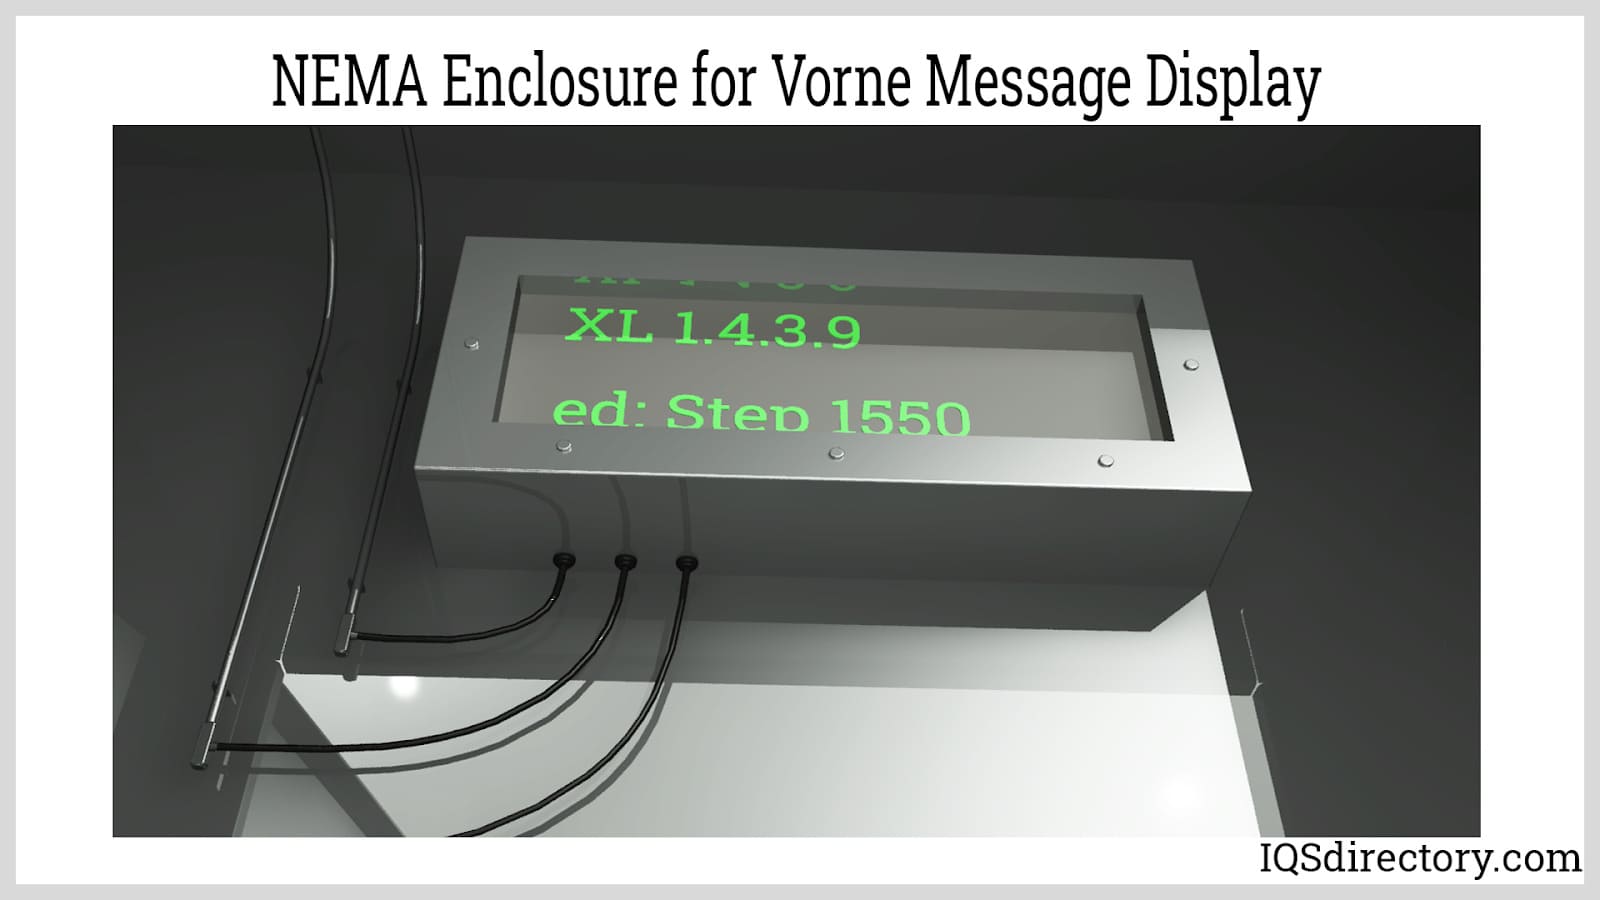 NEMA Enclosure for Vorne Message Display